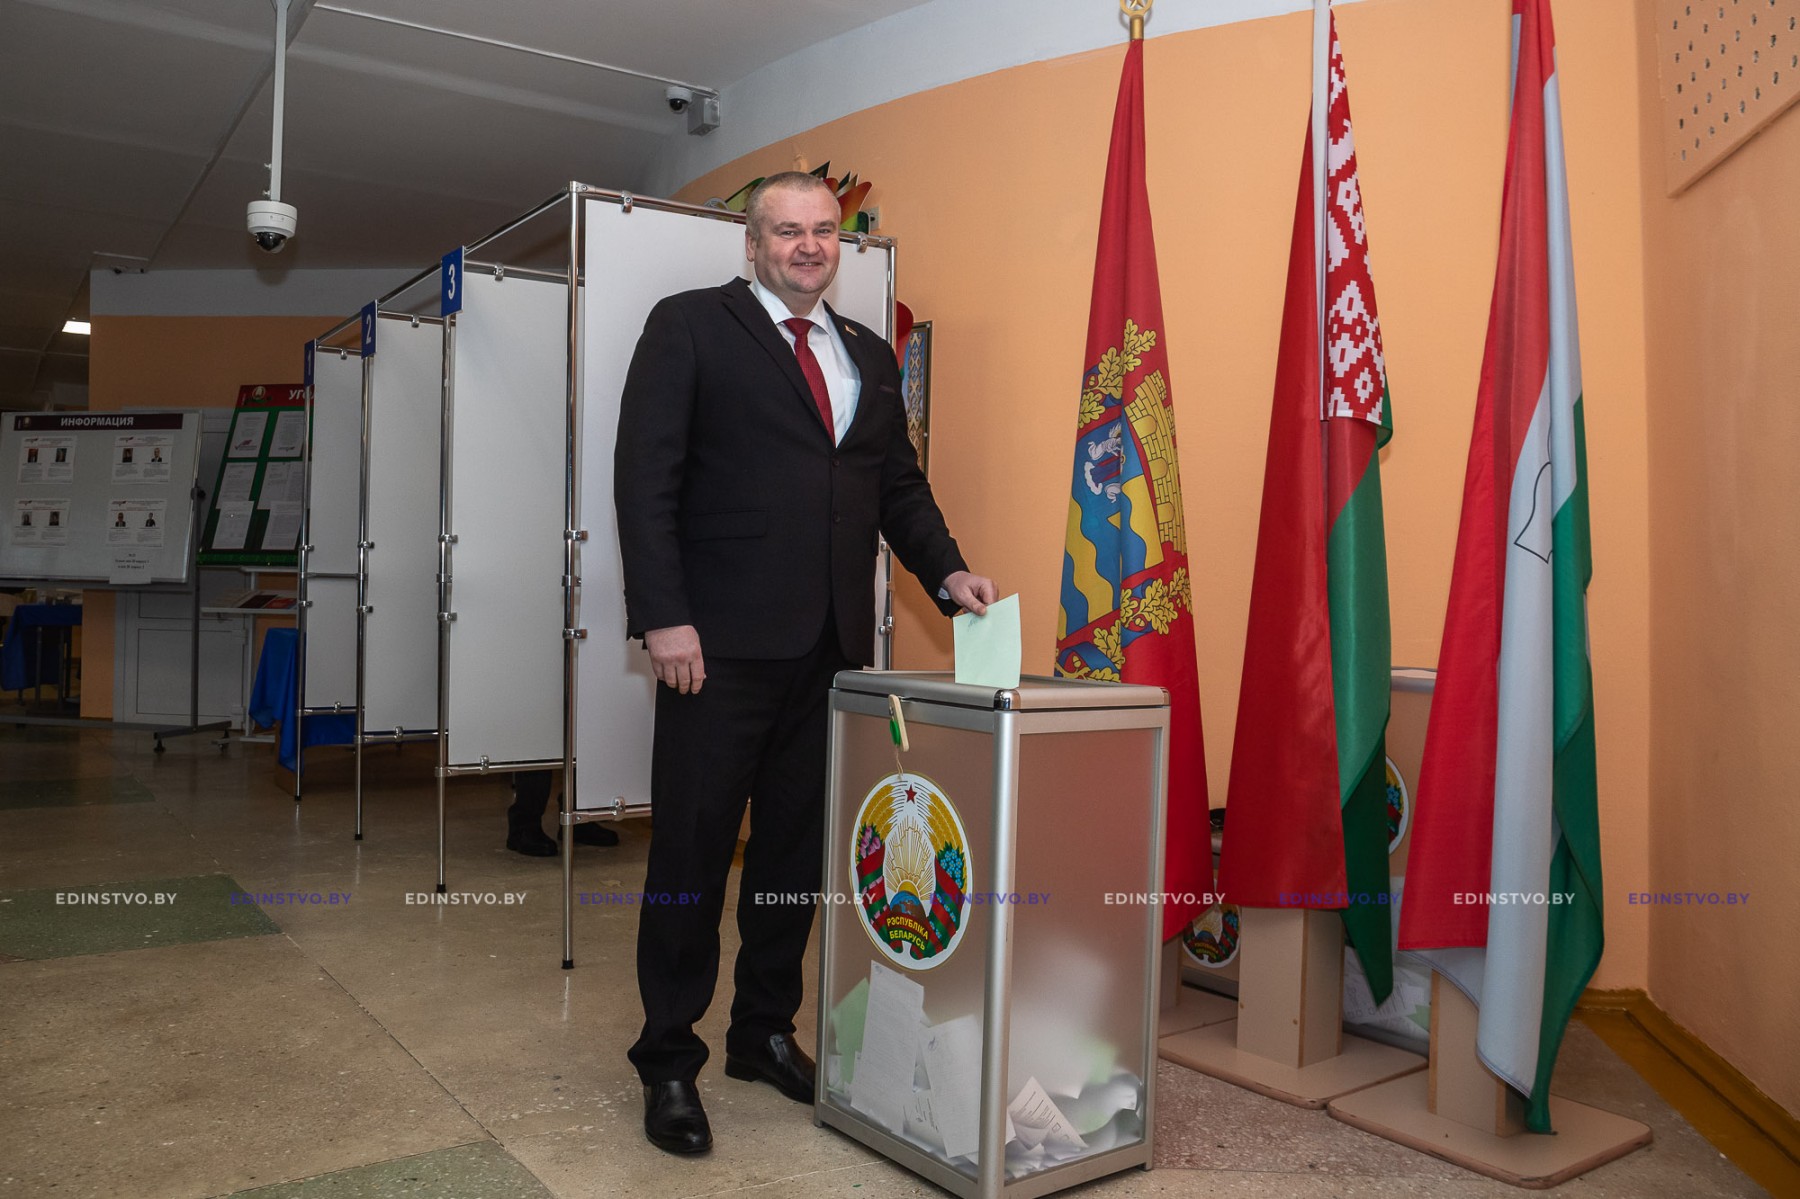 Николай Карпович: «Участвуя в выборах, граждане демонстрируют высокую гражданскую ответственность»